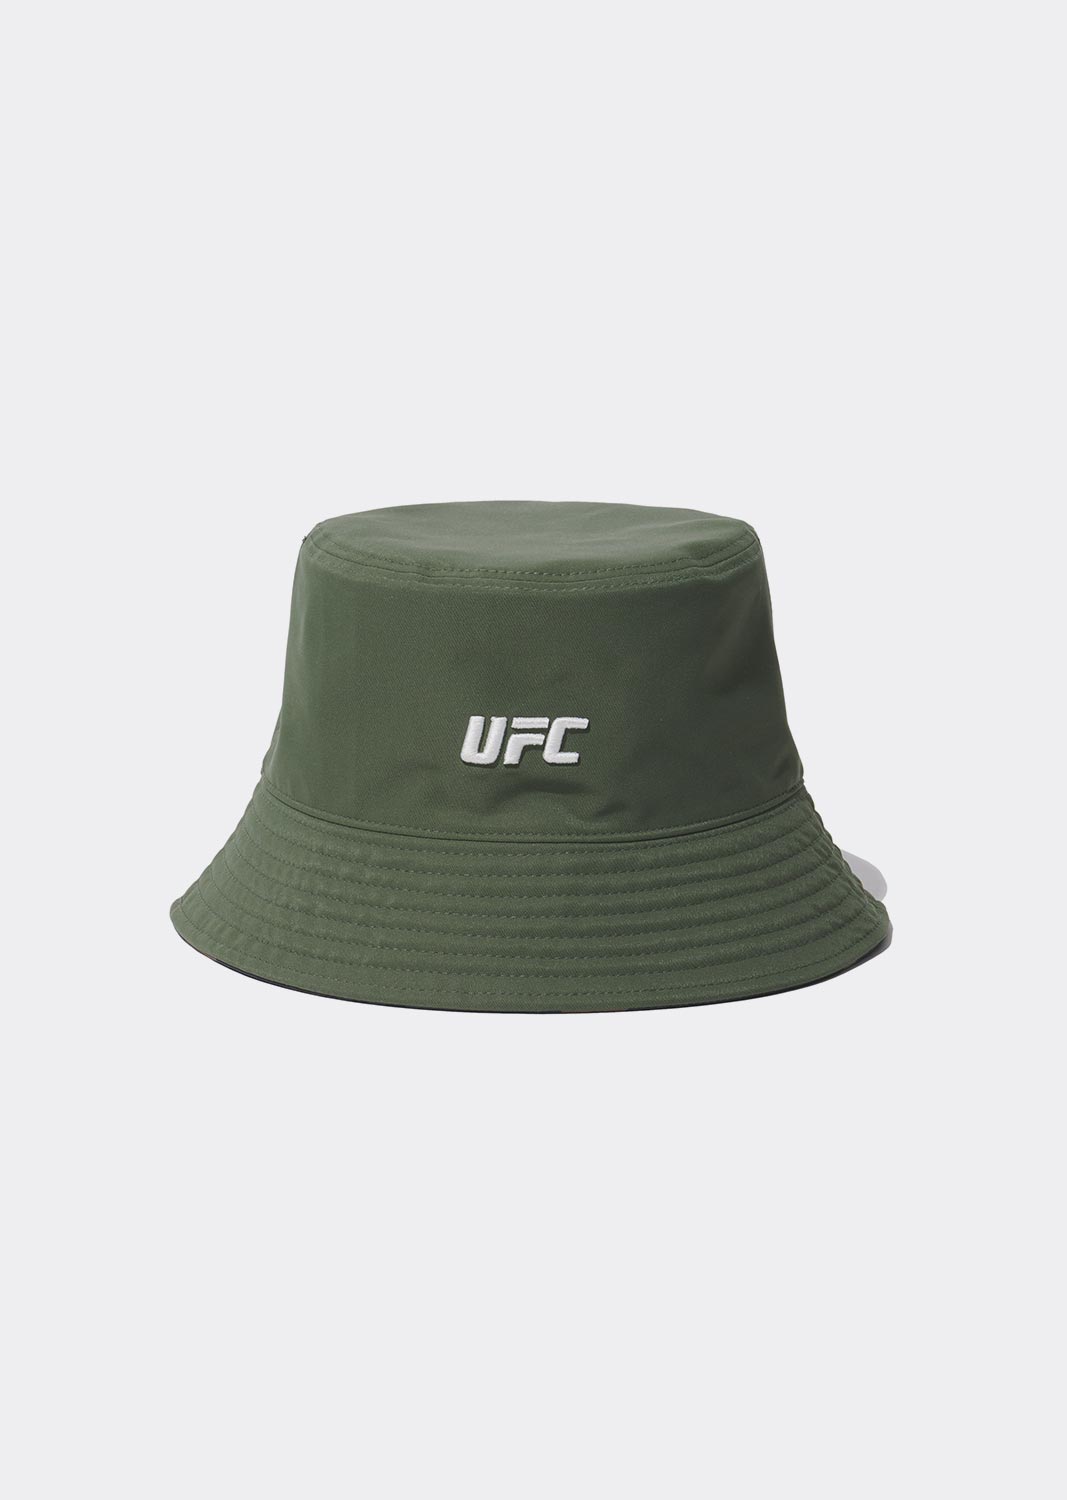 UFC 카모 리버시블 버킷햇 카키 U2HWU1343KH